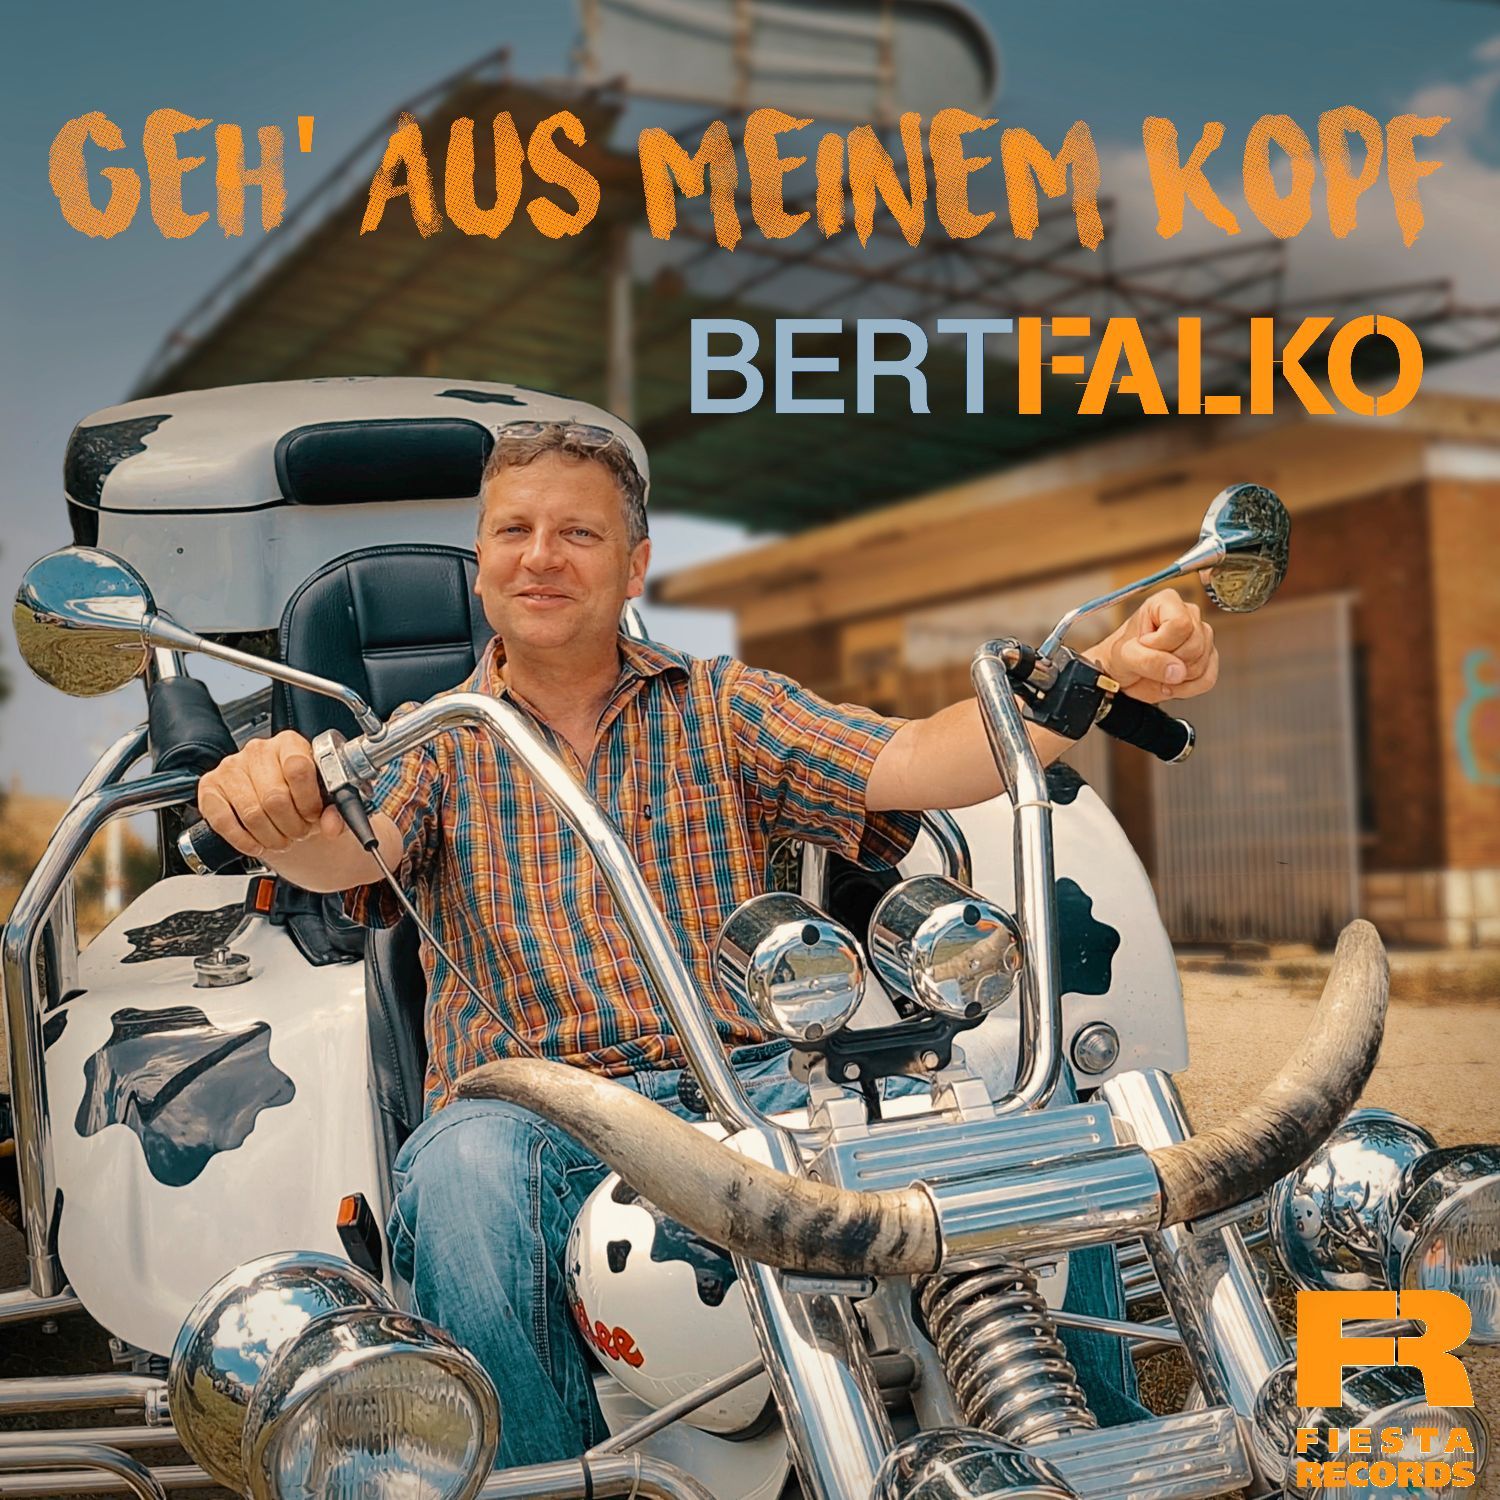 Bert Falko - Geh aus meinem Kopf